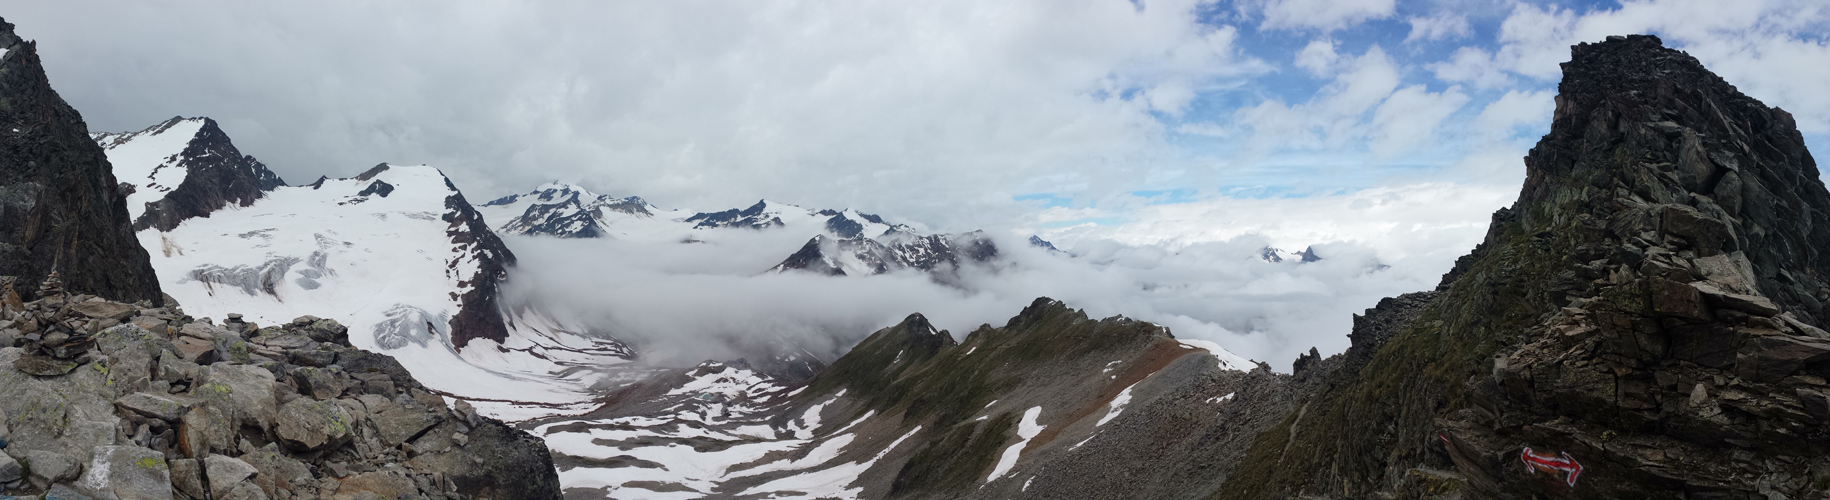 schönes Breitbildfoto mit Blick Richtung Wildspitze und Braunschweigerhütte